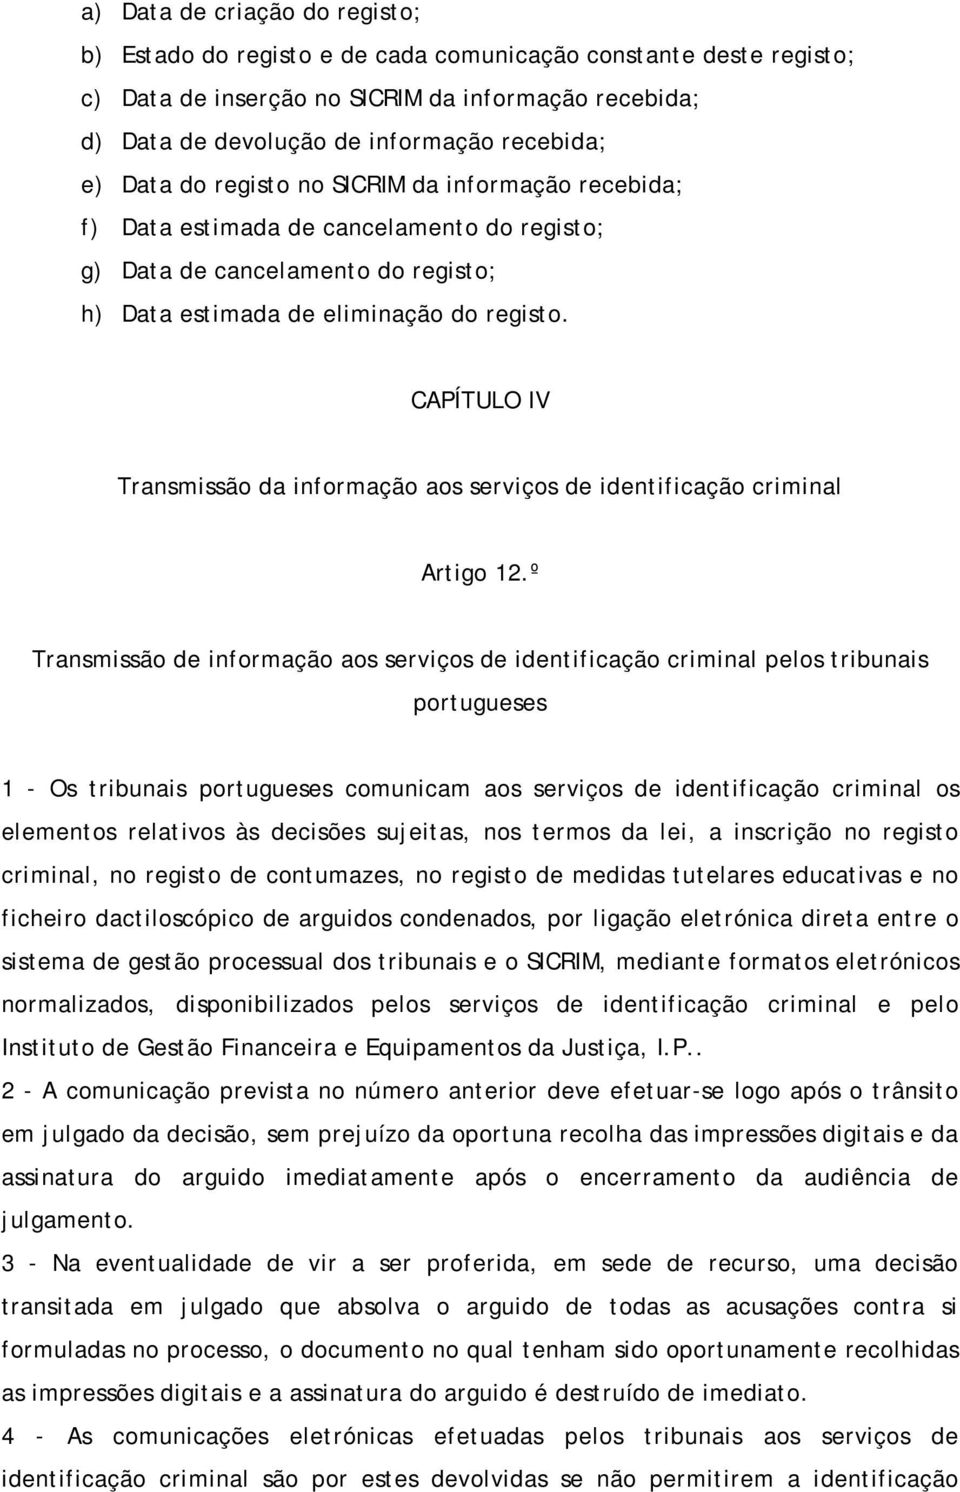 CAPÍTULO IV Transmissão da informação aos serviços de identificação criminal Artigo 12.